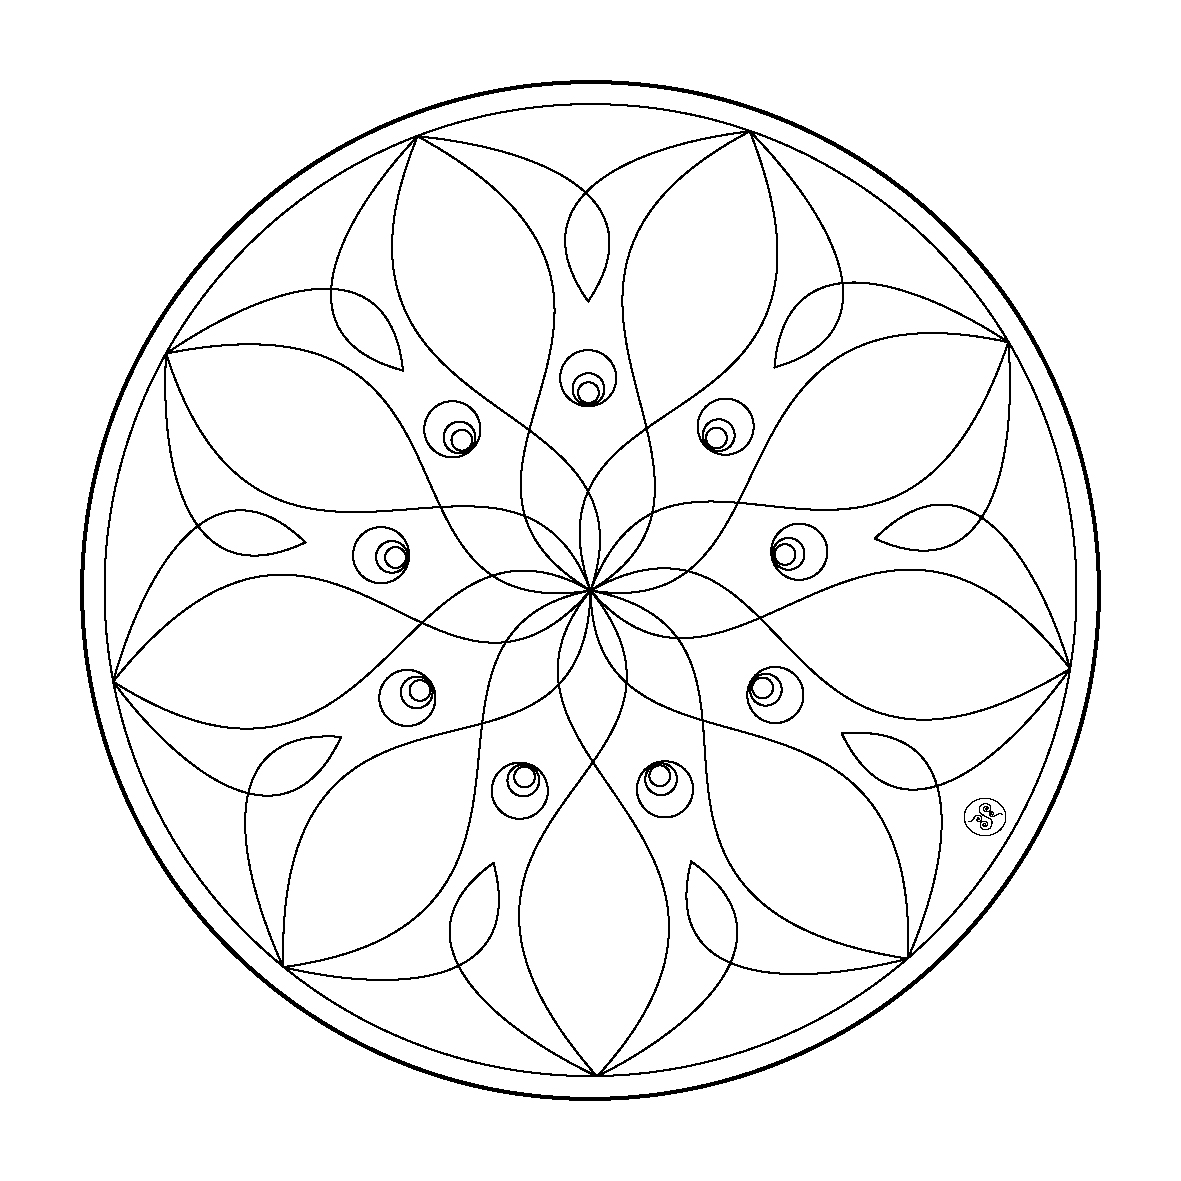 Coloriage Difficile Mandala Fleur pour Adulte dessin gratuit à